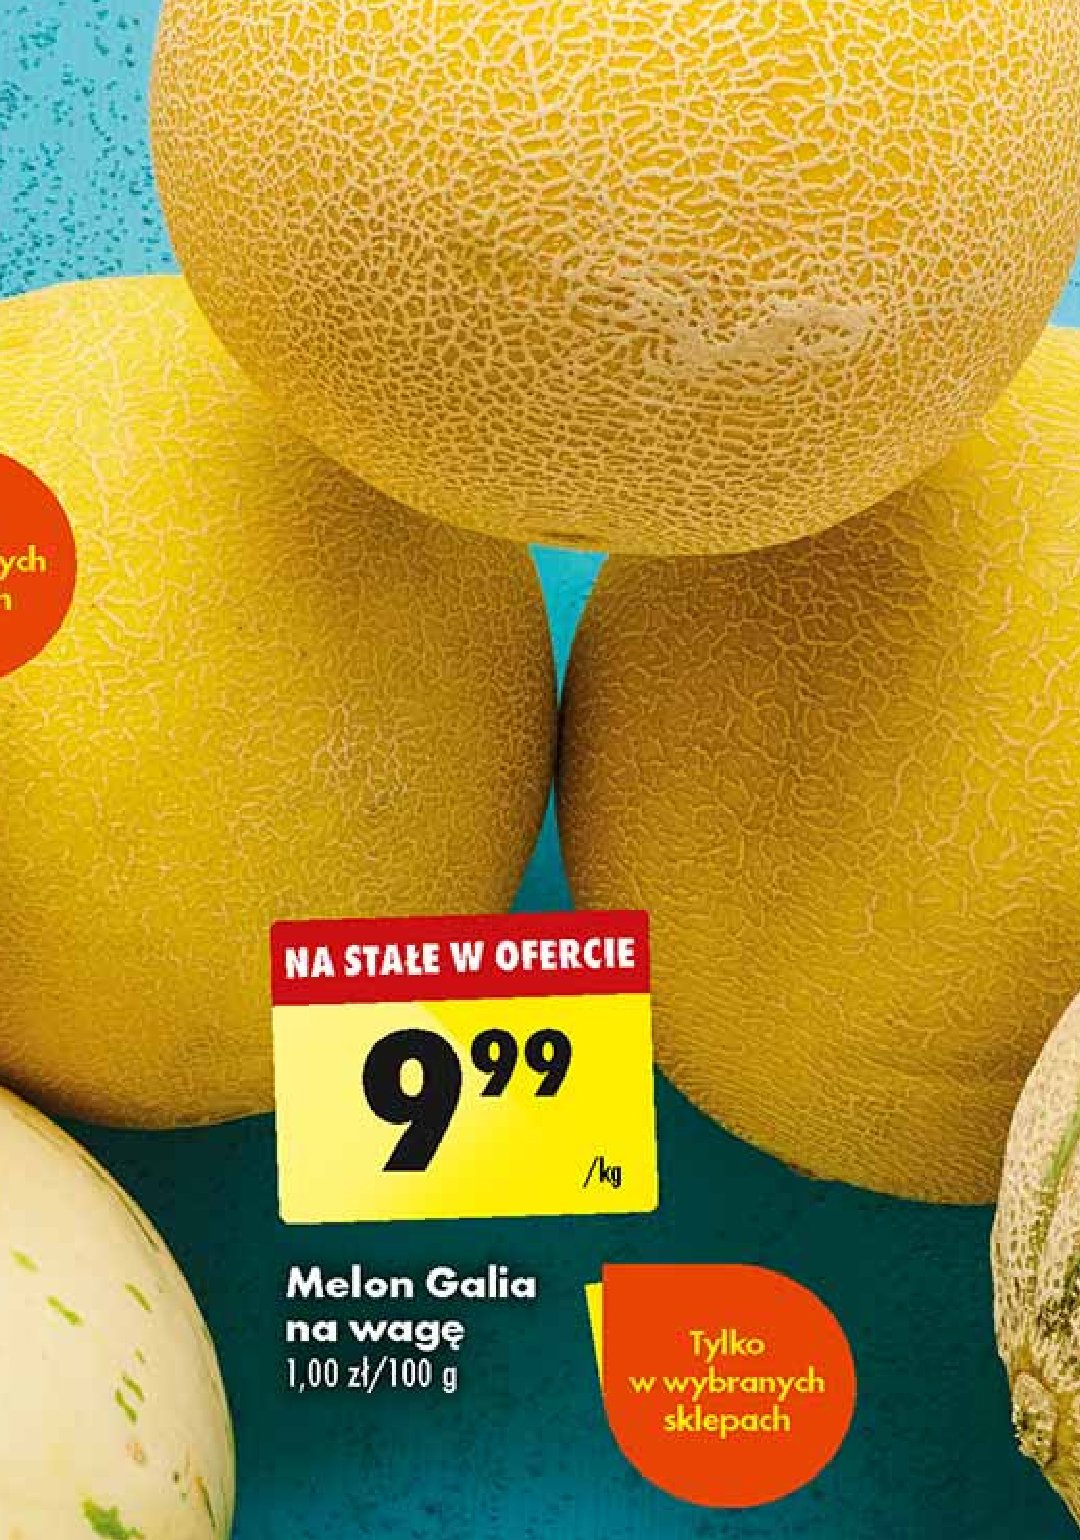 Melon galia promocja